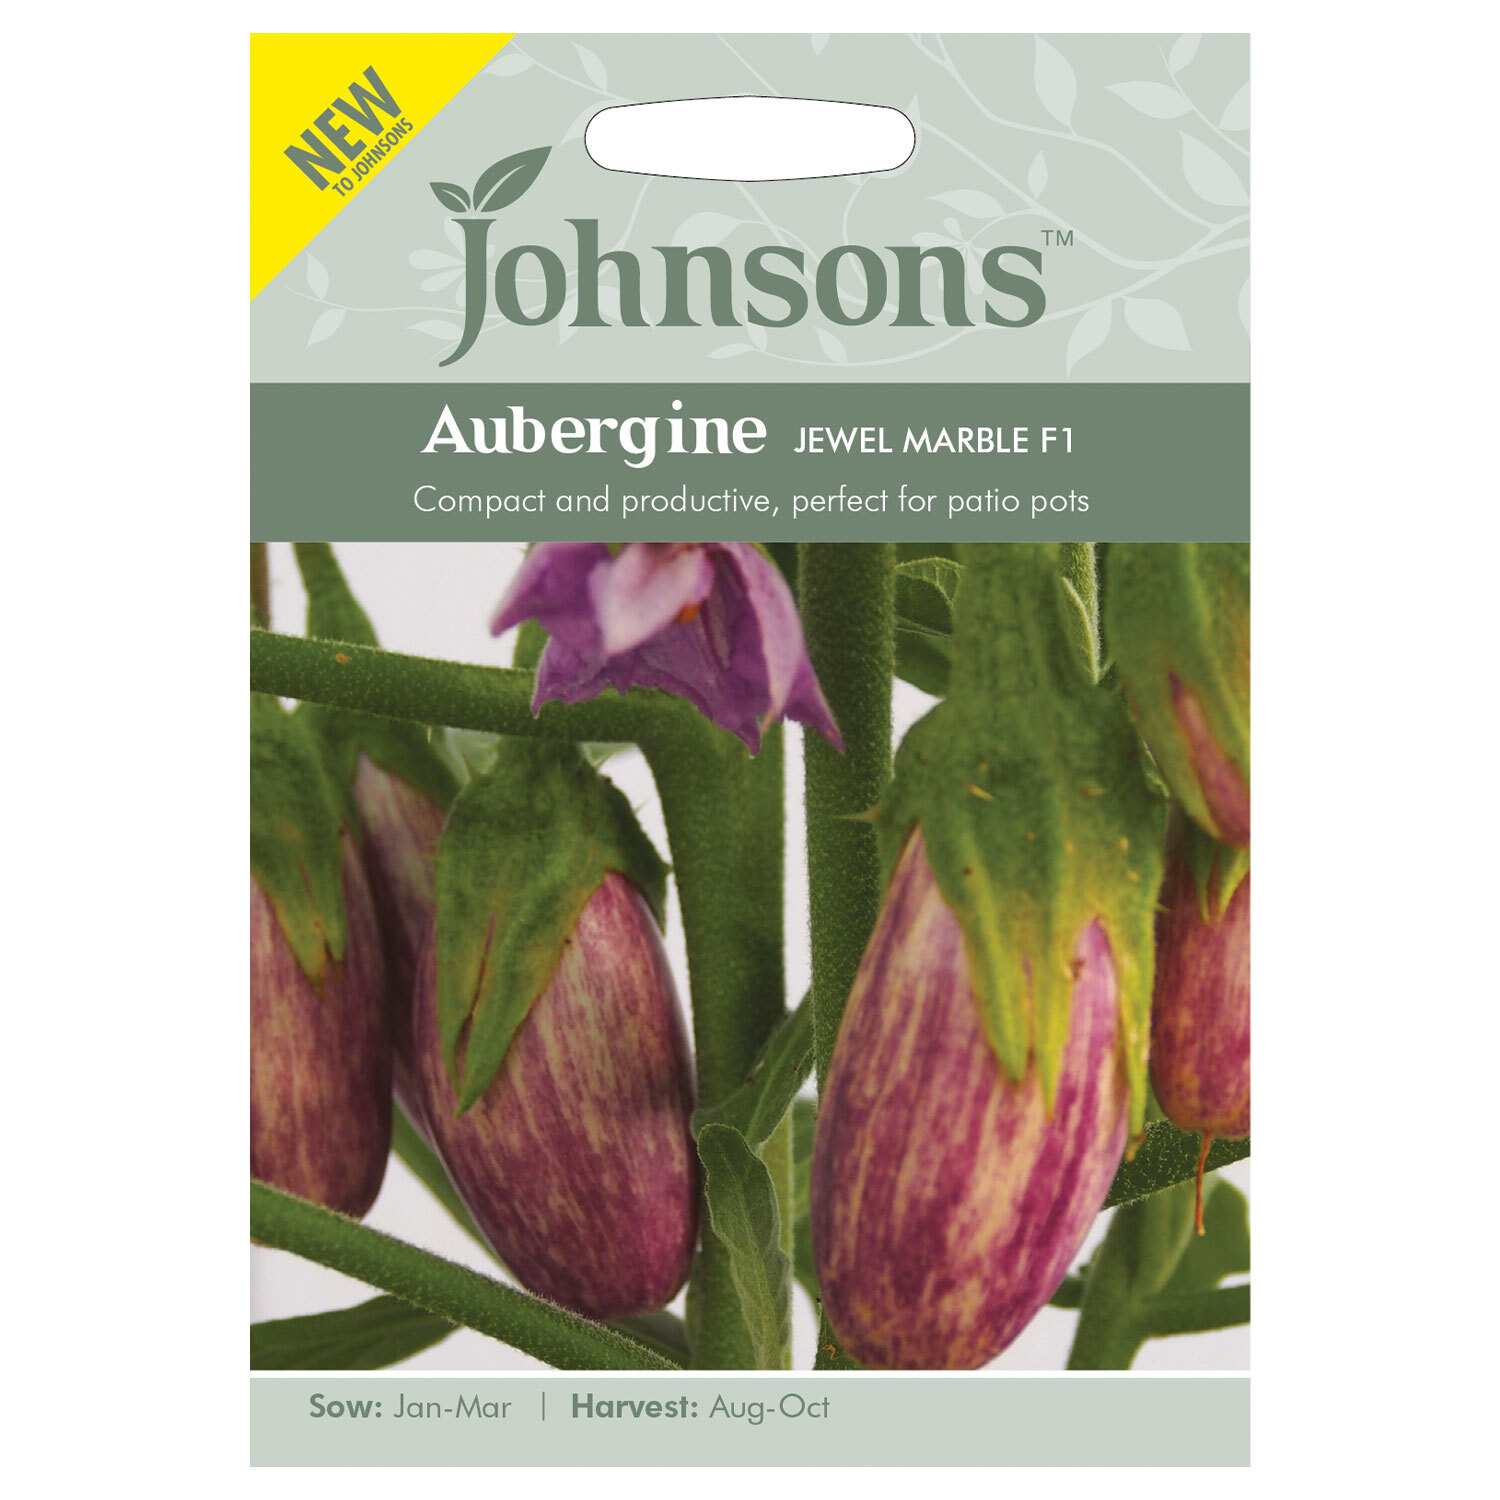 Johnsons Aubergine Jewel Marble F1 Vegetable Seed Image 2